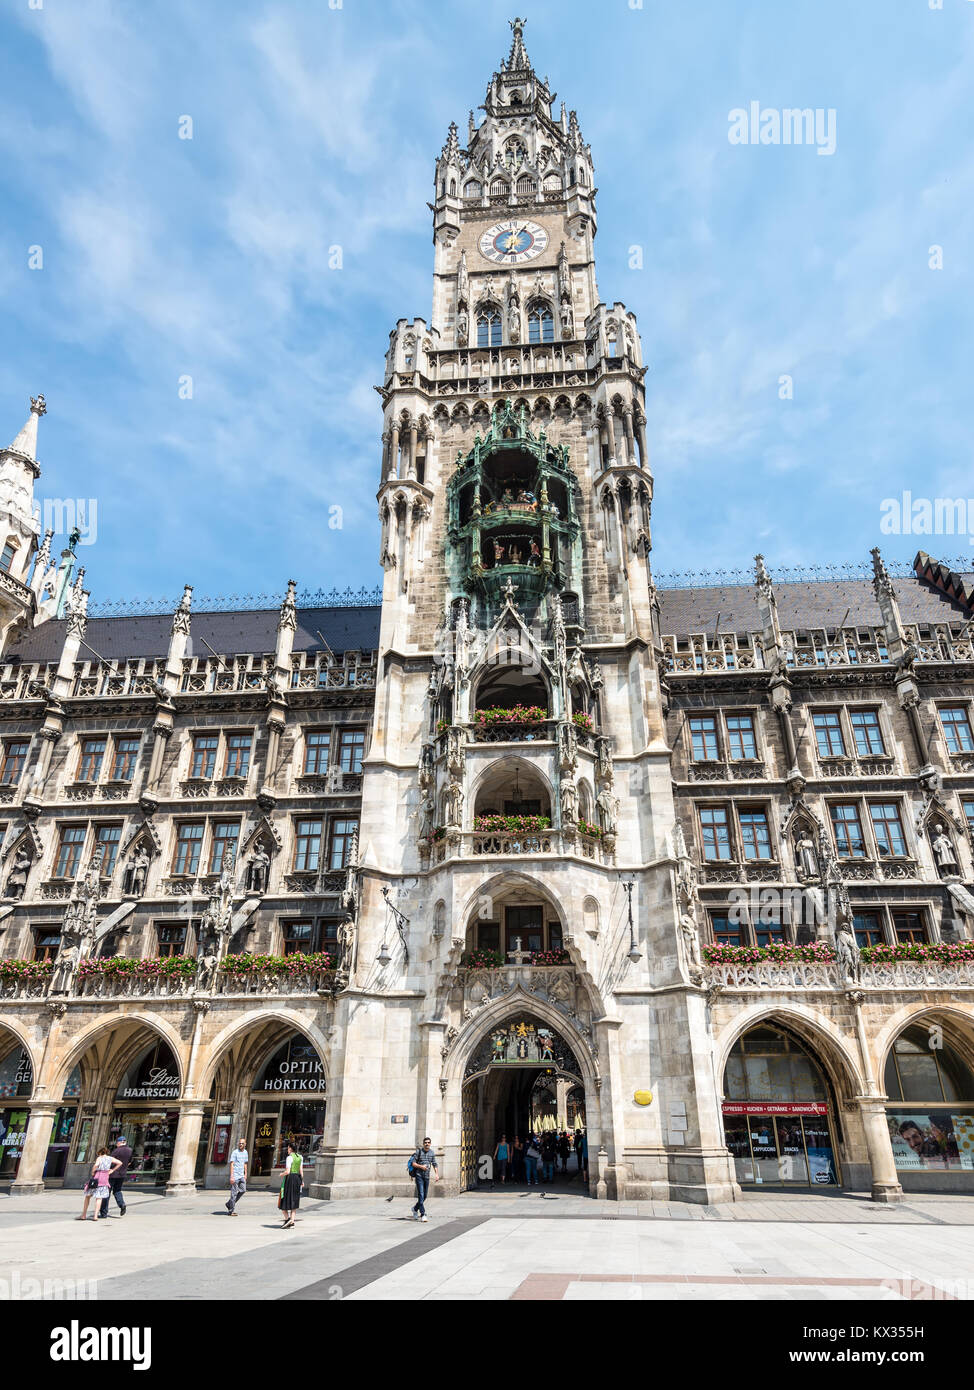 Monaco di Baviera, Germania - 29 Maggio 2016: torre con orologio della Marienplatz municipio architettura in posizione luogo famoso quadrato in città europea Monaco di Baviera, Germania Foto Stock